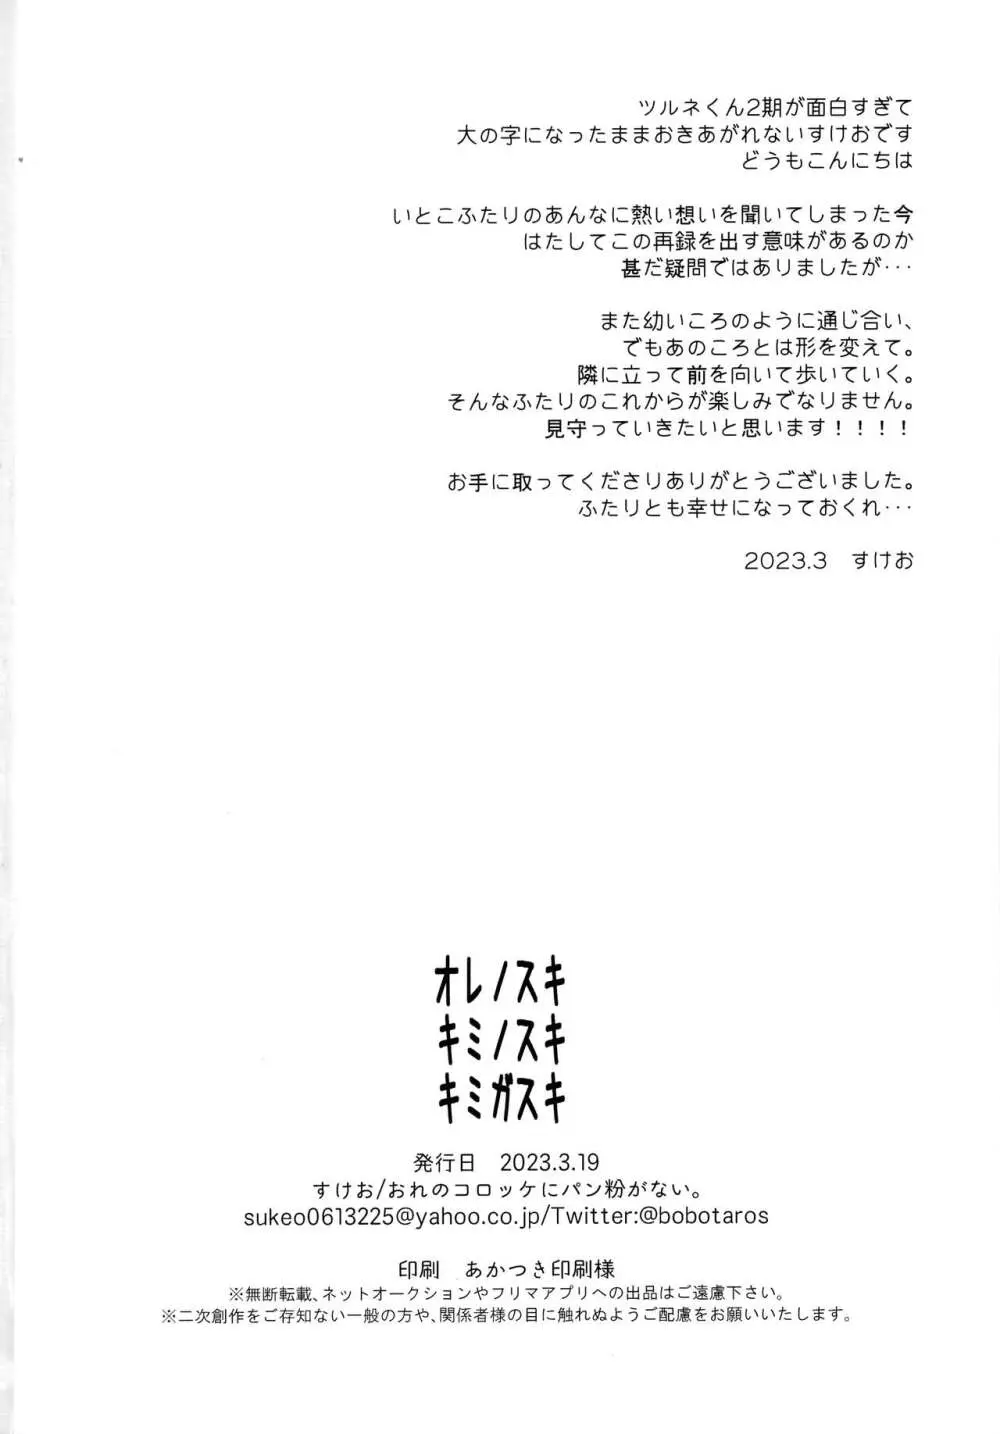 オレノスキキミノスキキミガスキ - page101